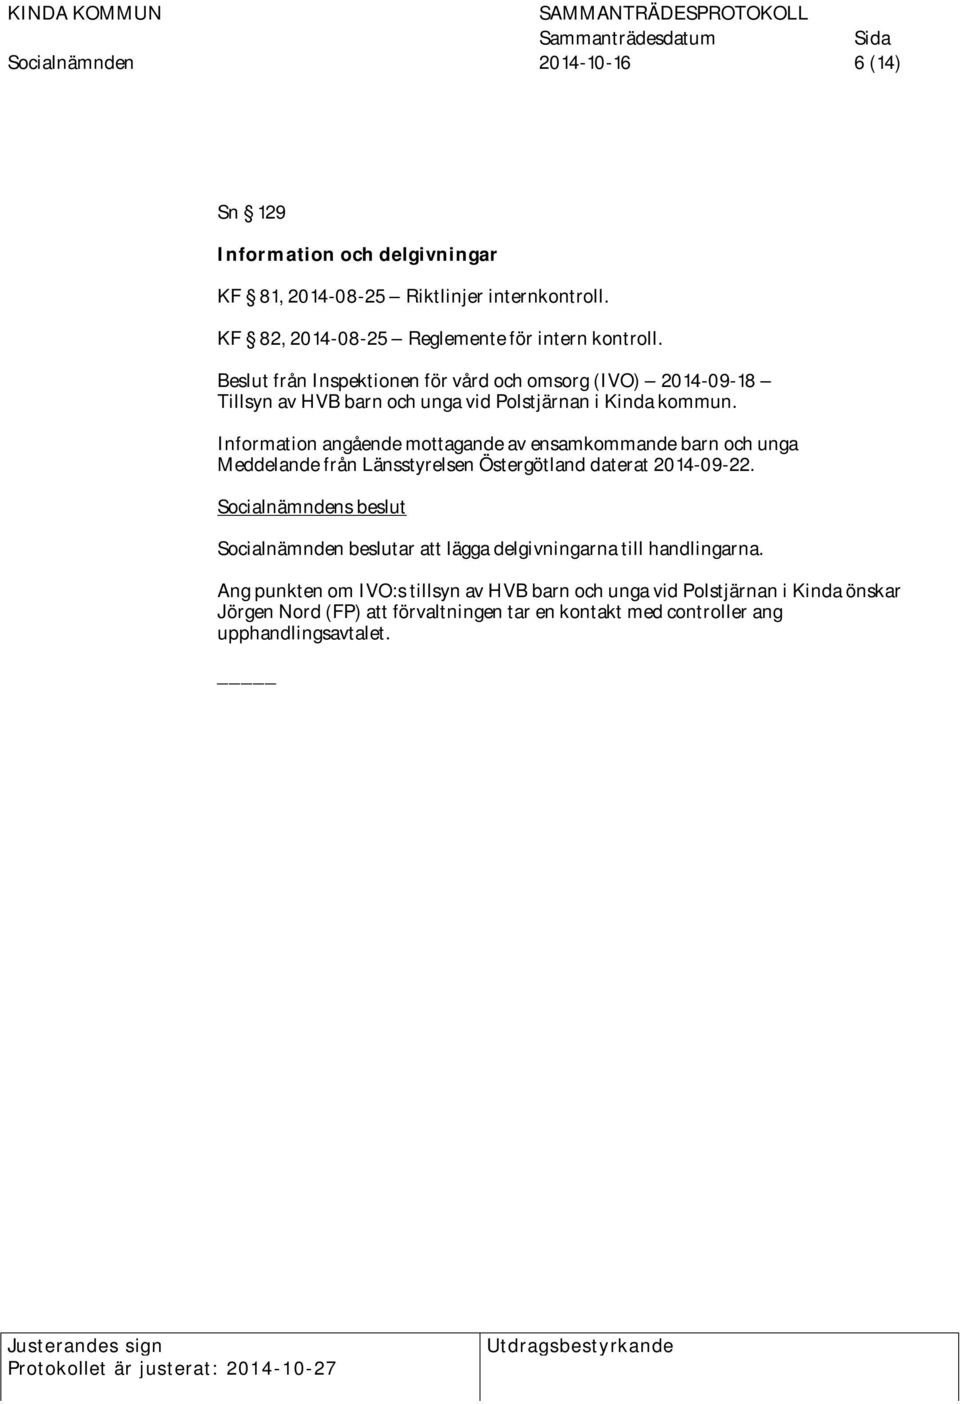 Information angående mottagande av ensamkommande barn och unga Meddelande från Länsstyrelsen Östergötland daterat 2014-09-22.